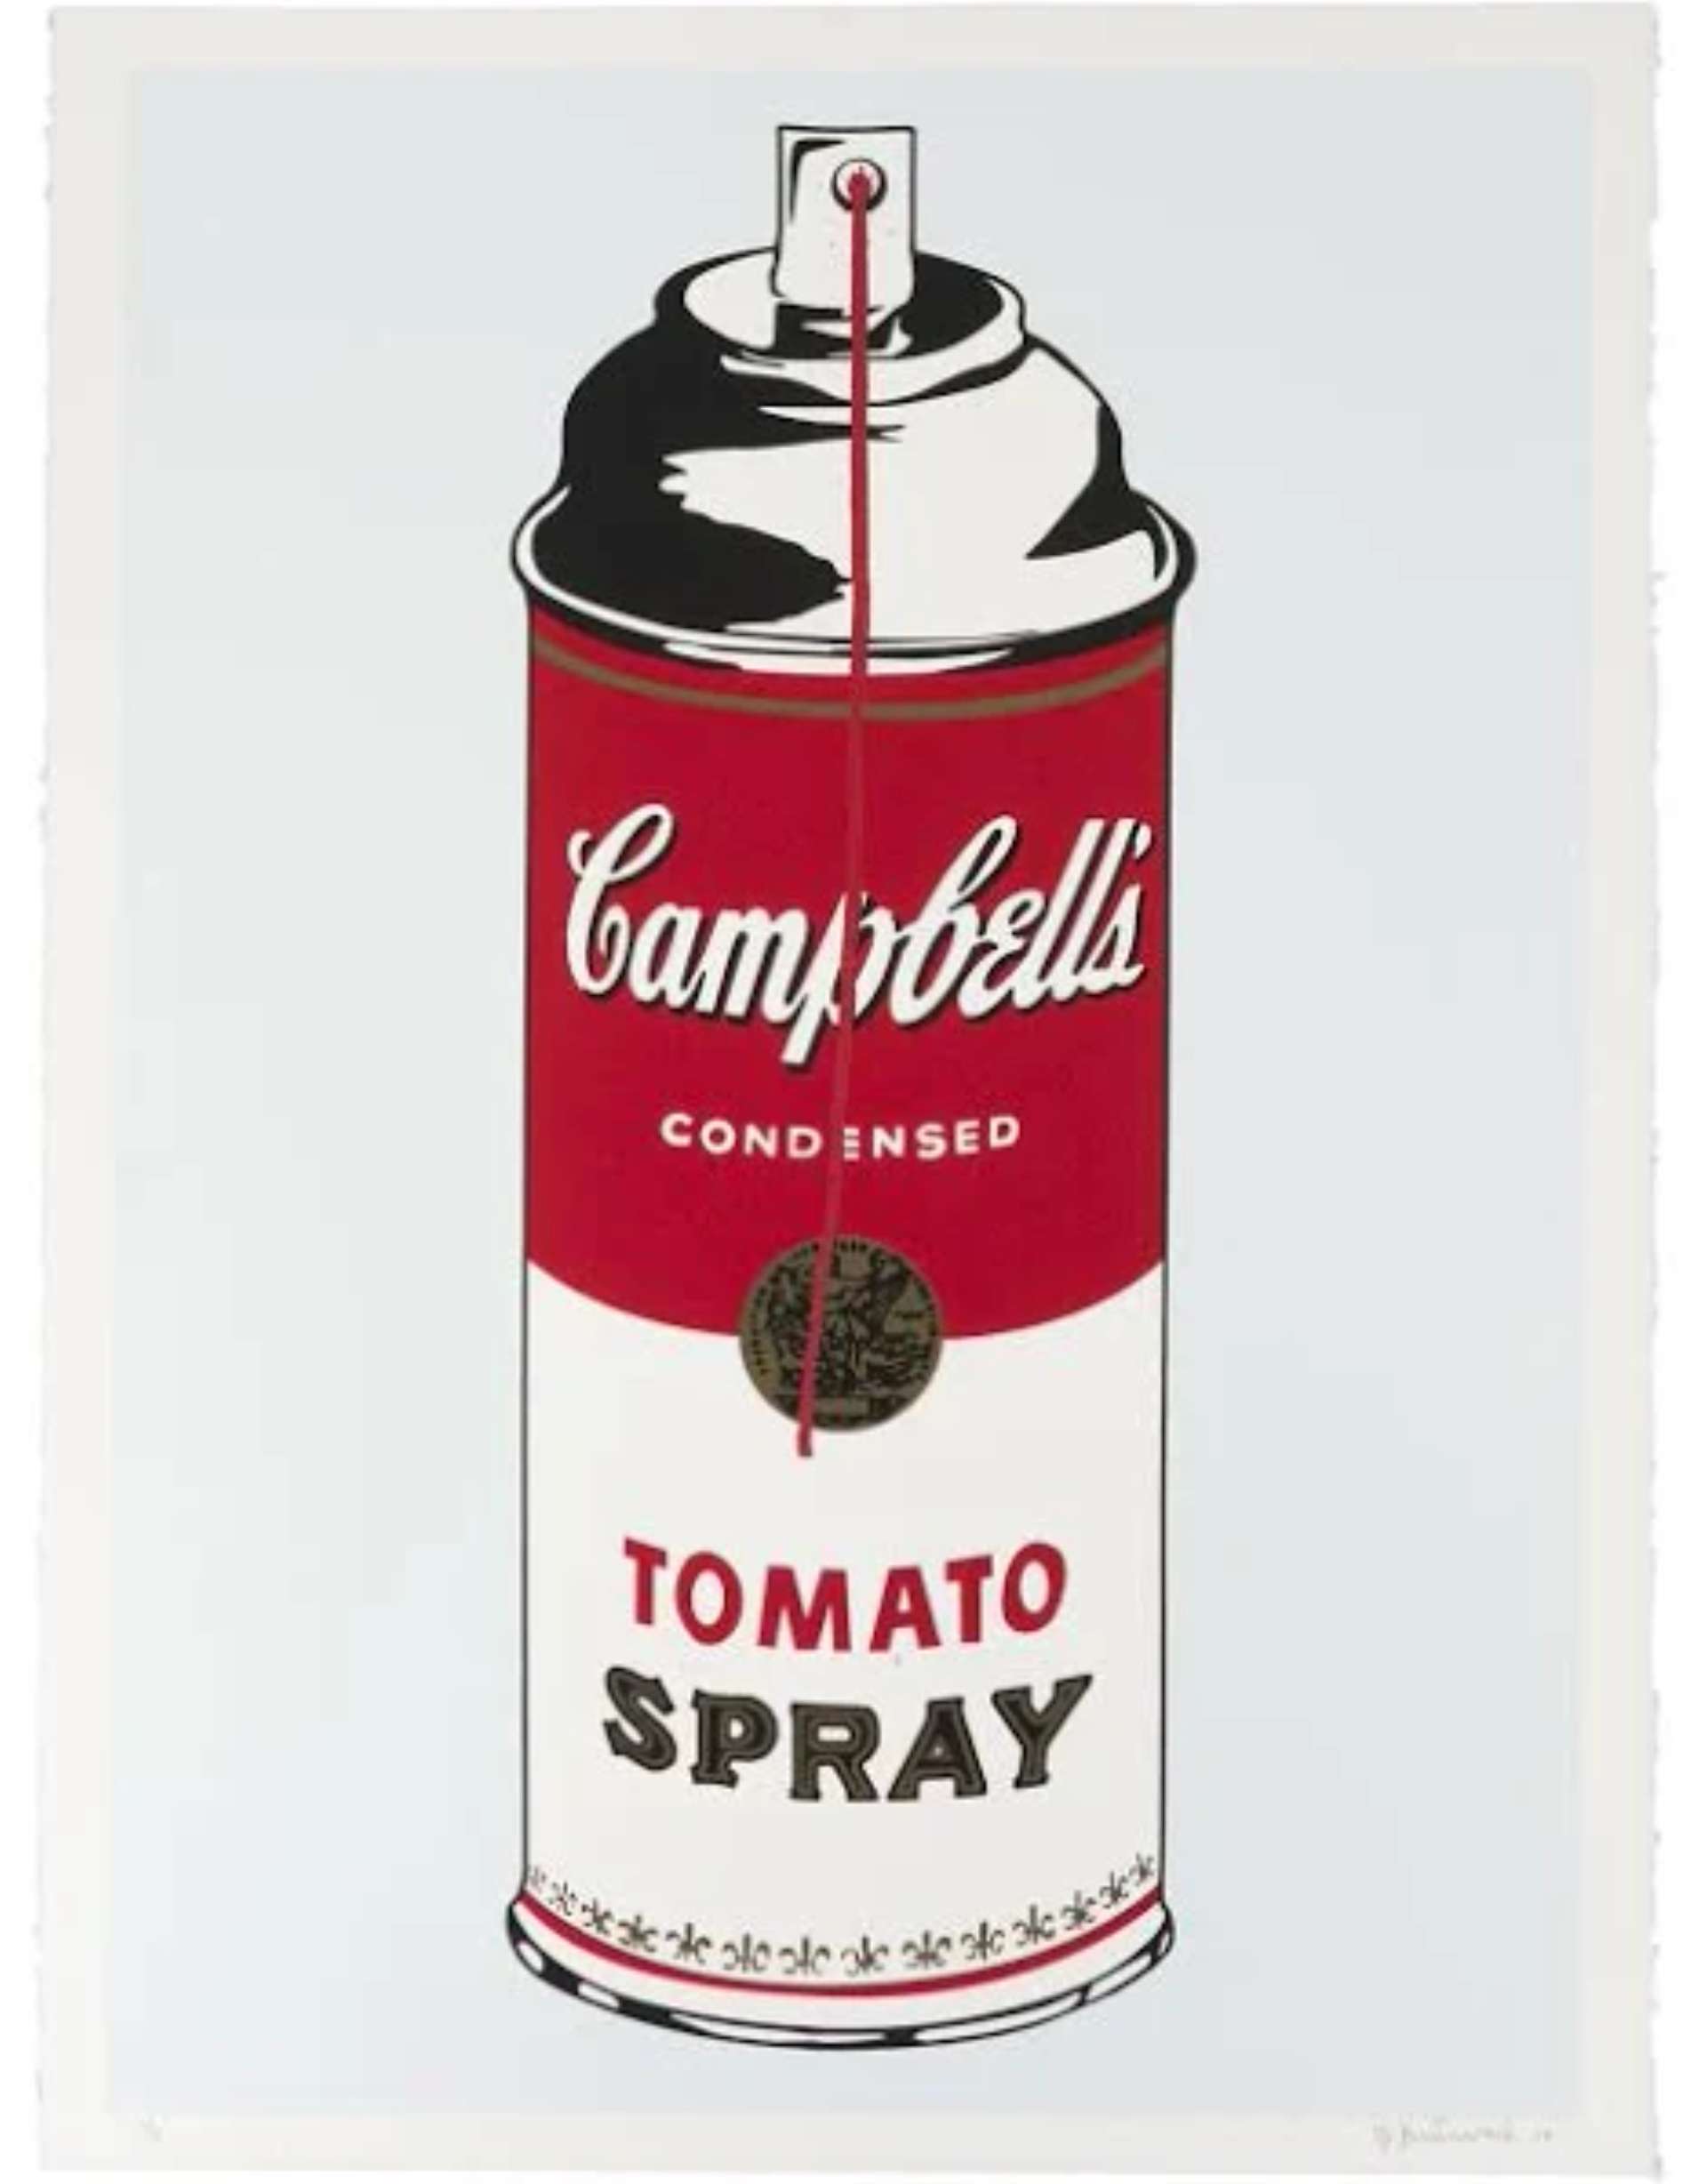 Tomato Spray © Mr. Brainwash 2008